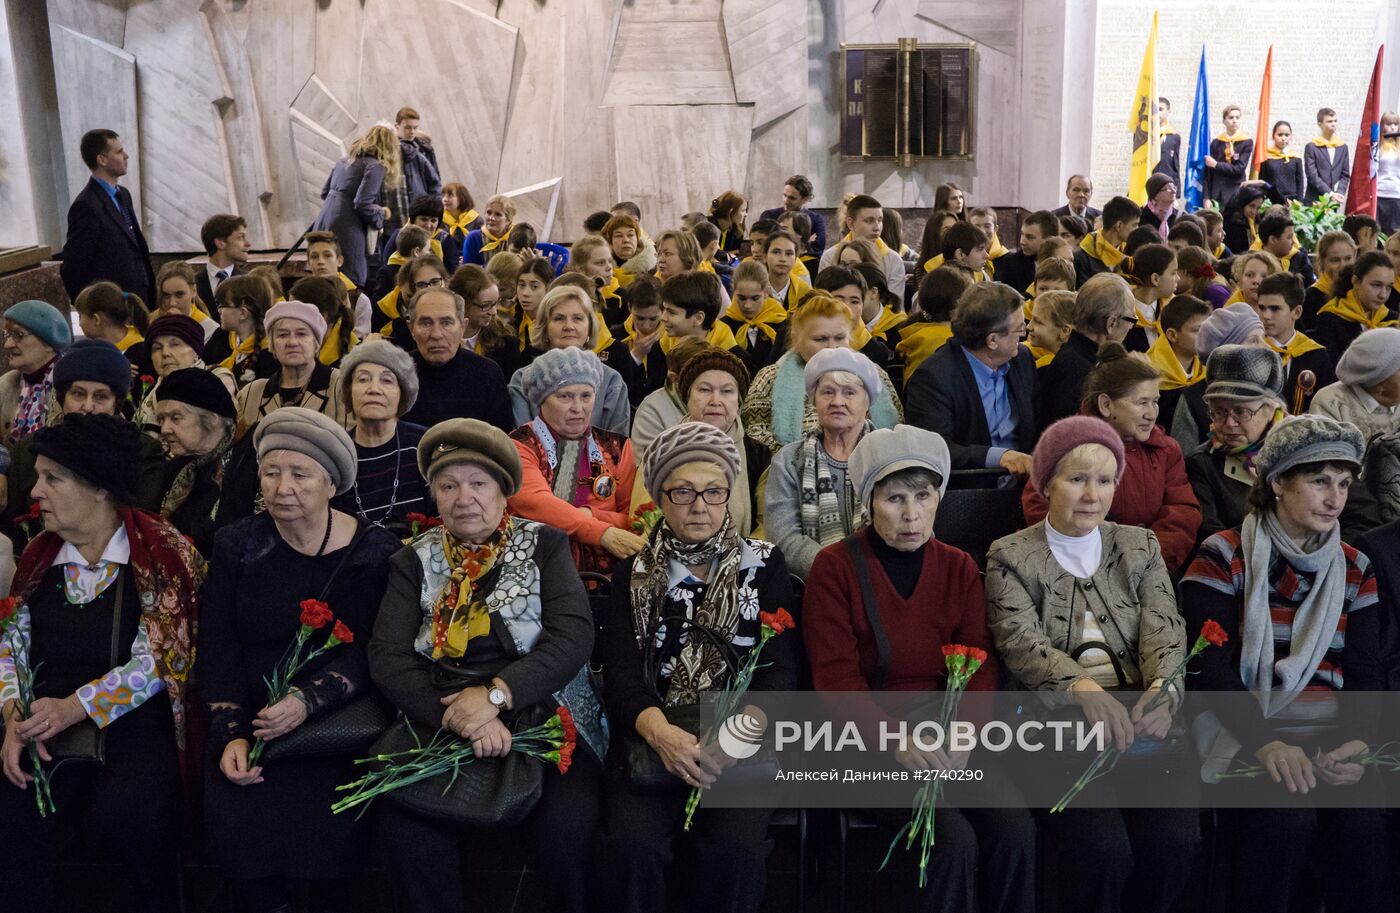 Церемония открытия всероссийской патриотической программы "Дороги Победы" в Санкт-Петербурге